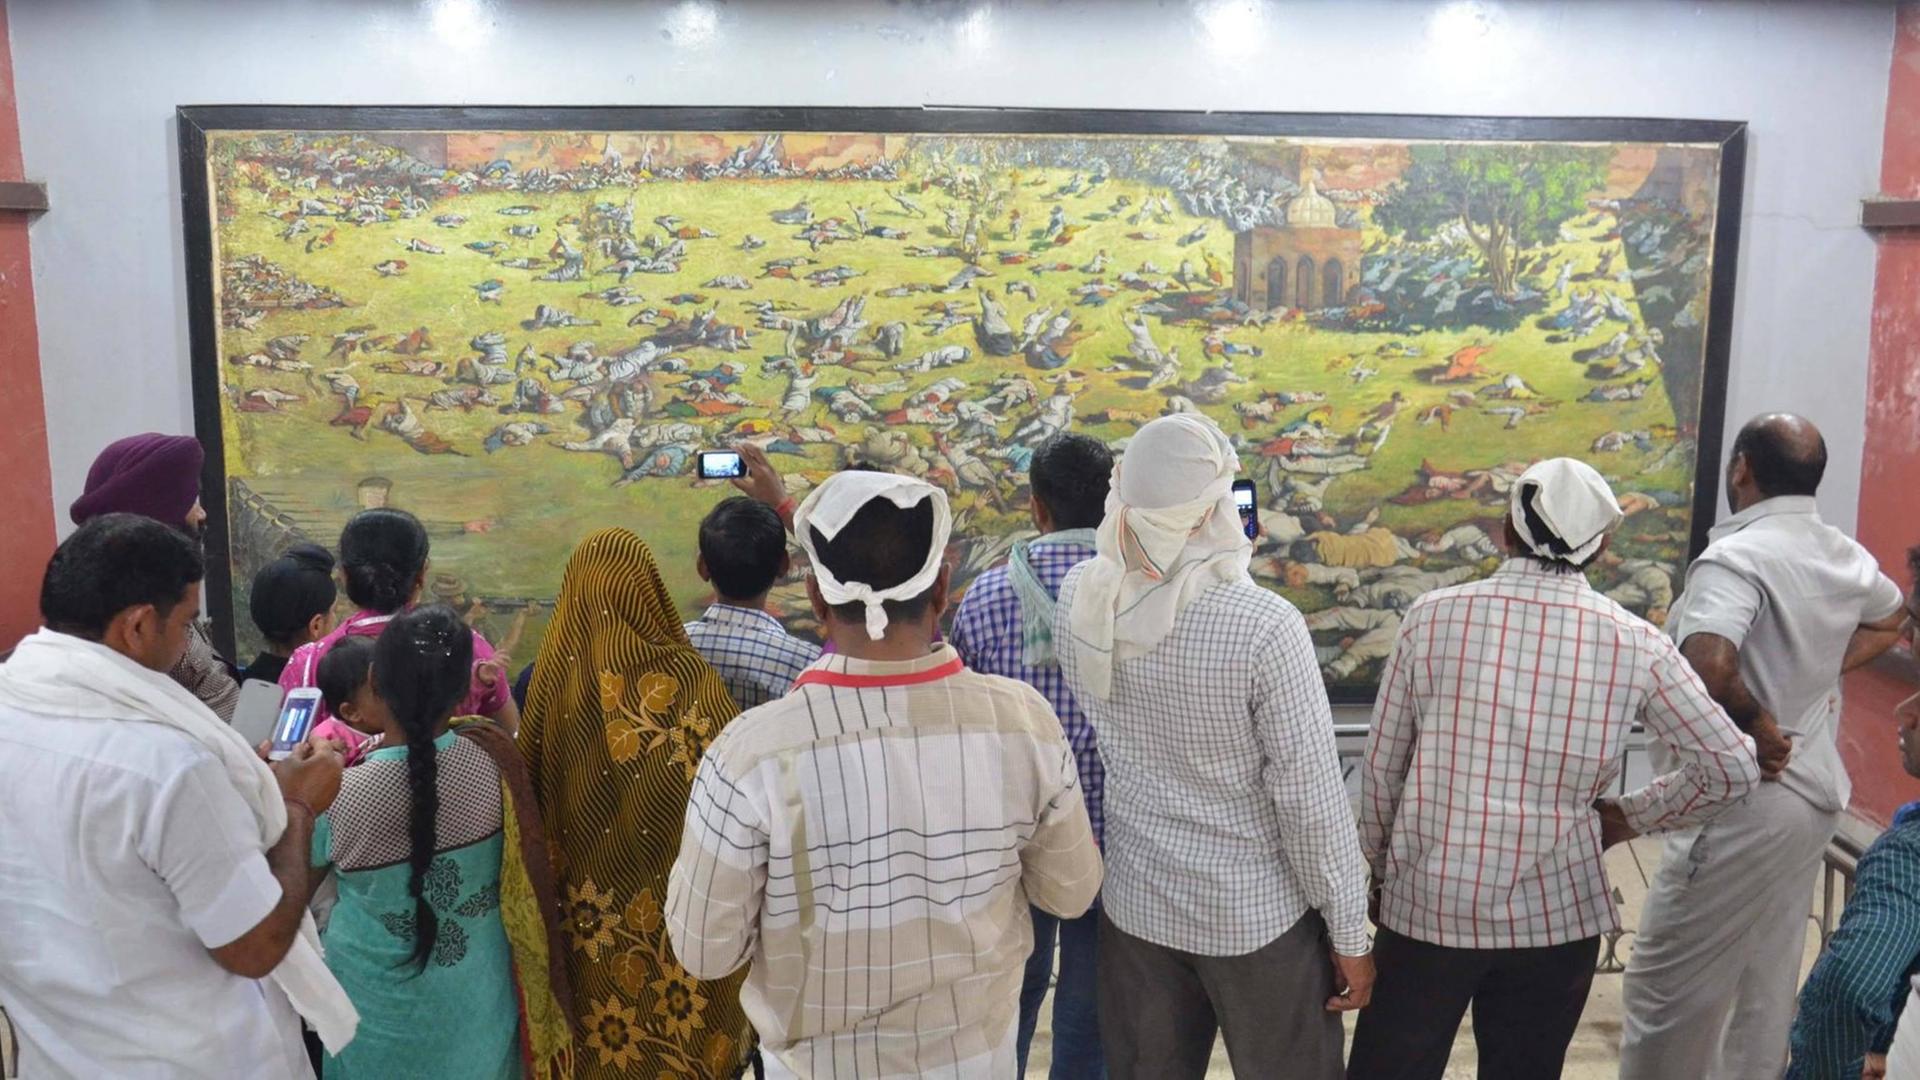 Besucher schauen auf ein Gemälde, das das Massaker im Park Jallianwala Bagh in Amritsar am 13. April 1919 darstellt.